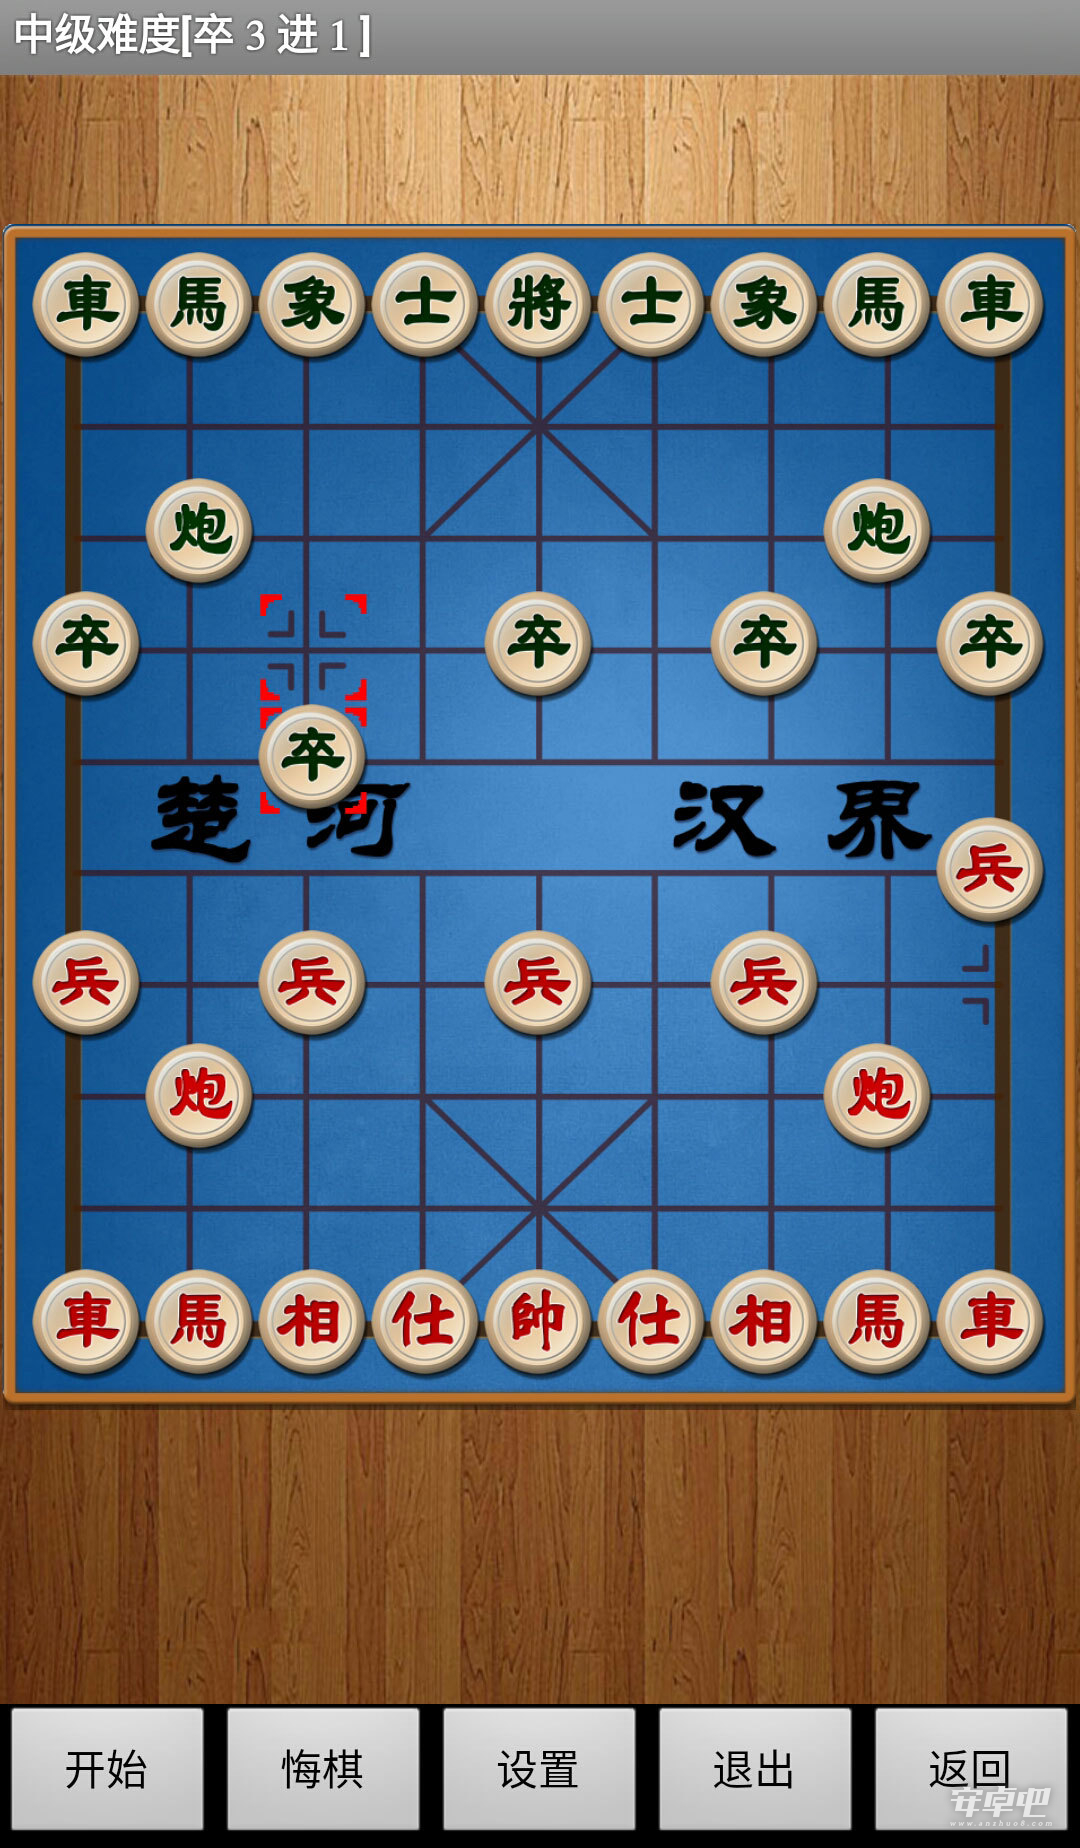 经典中国象棋1